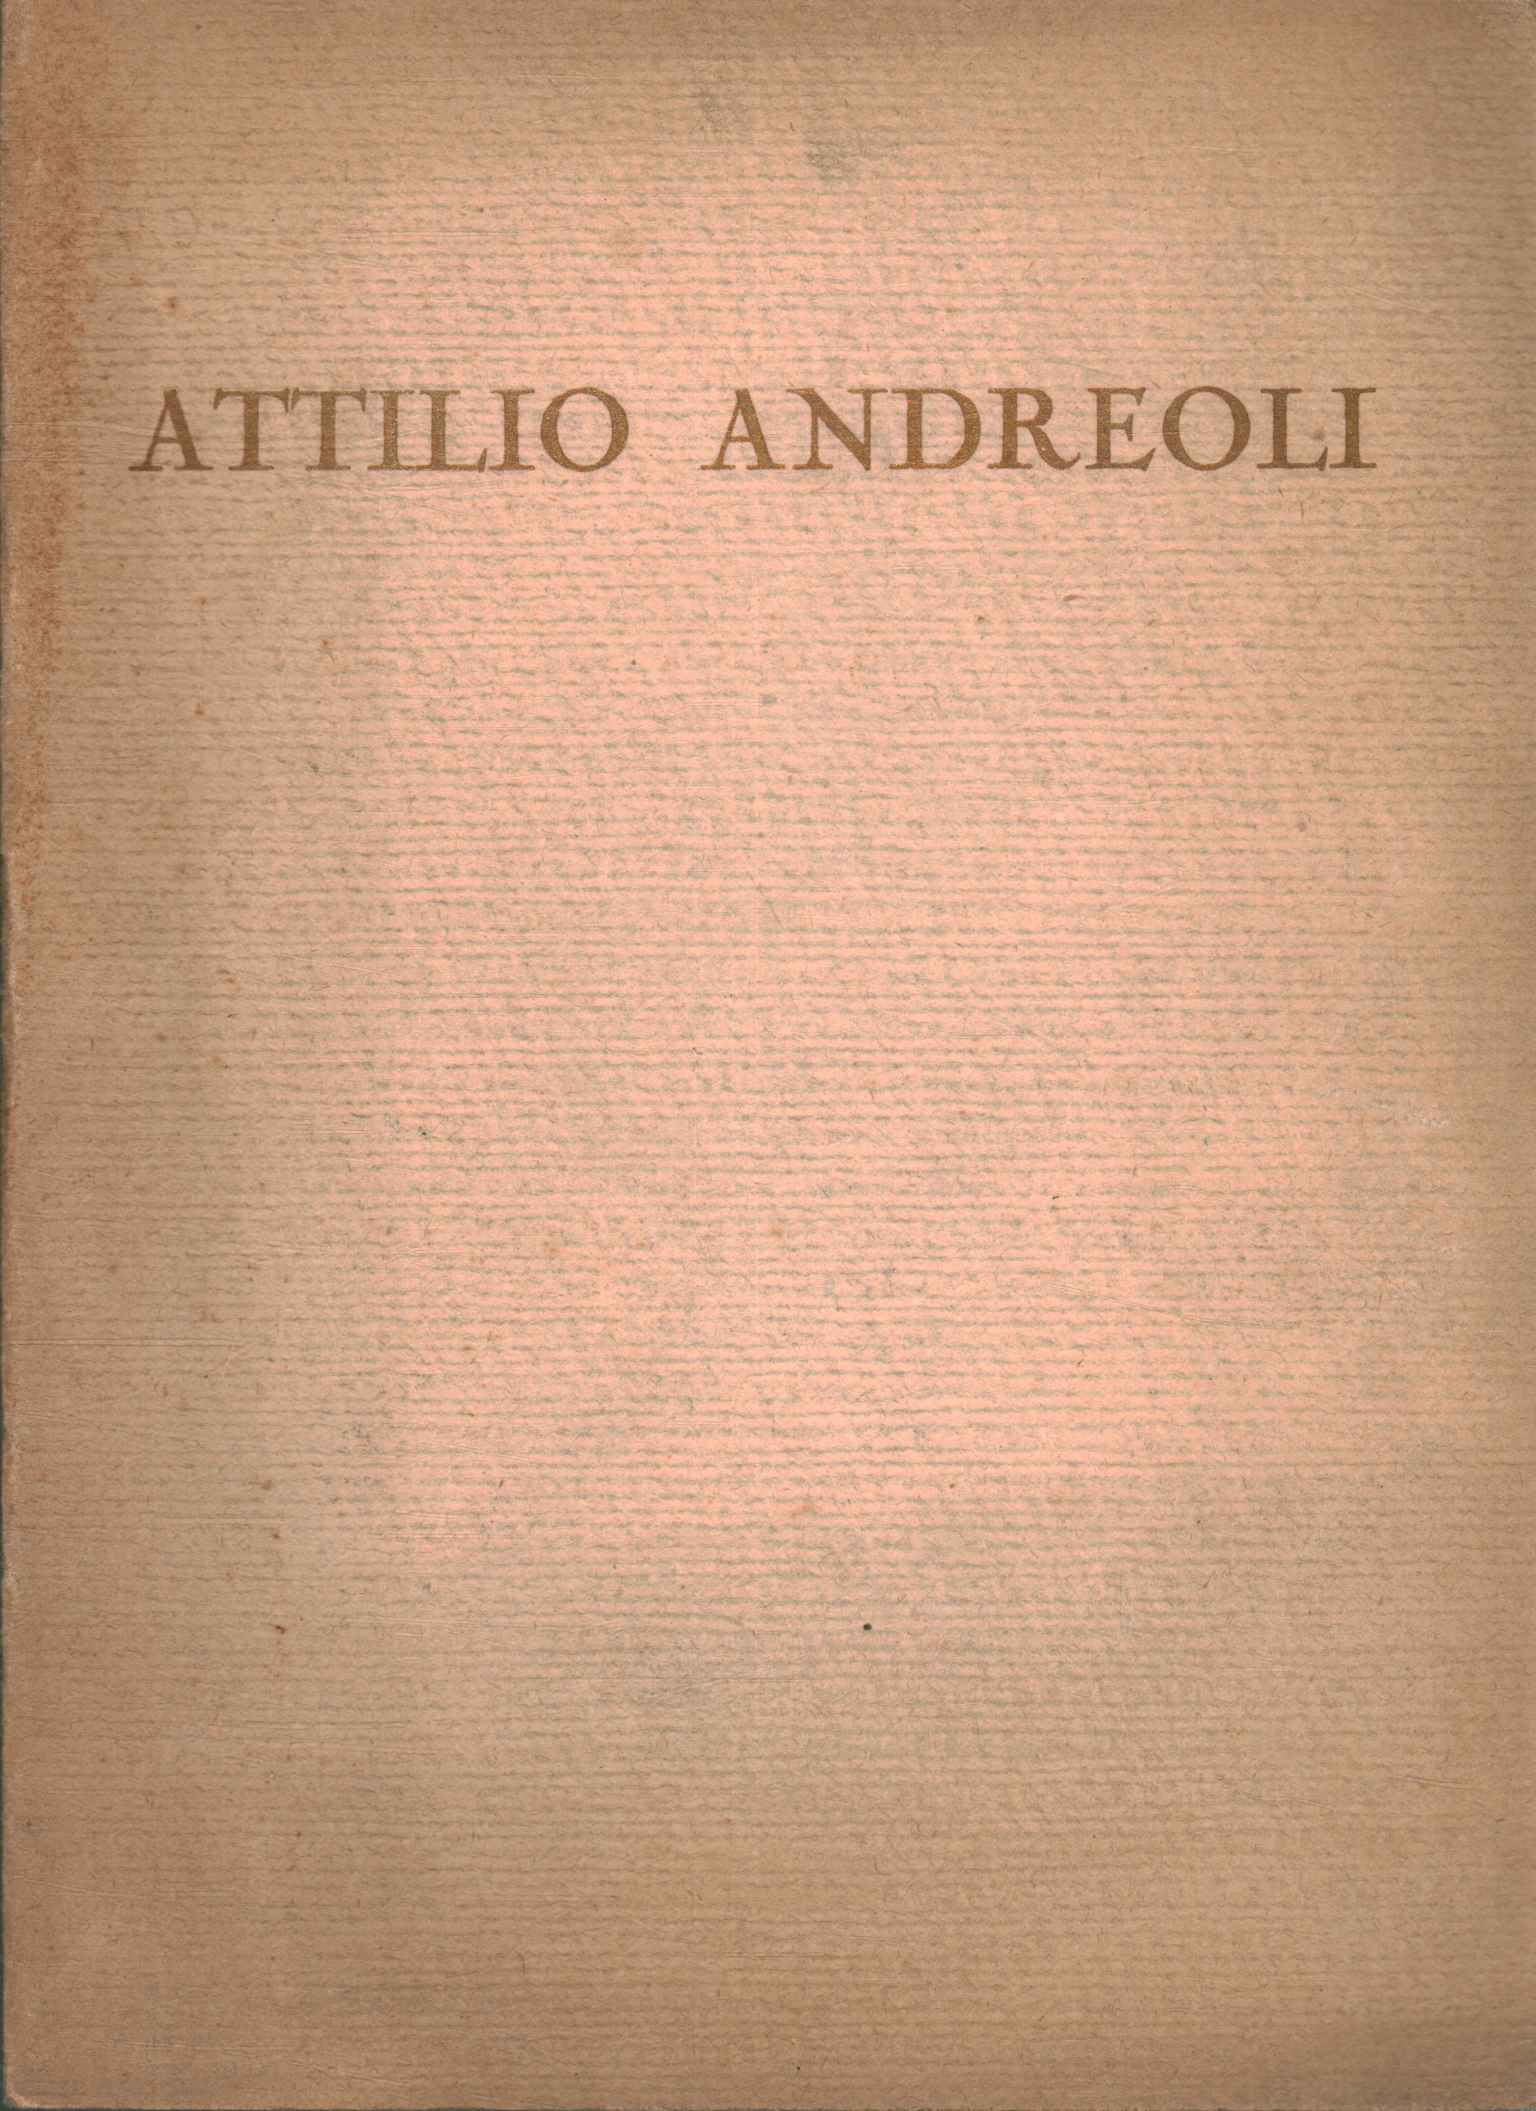 Attilio Andreoli